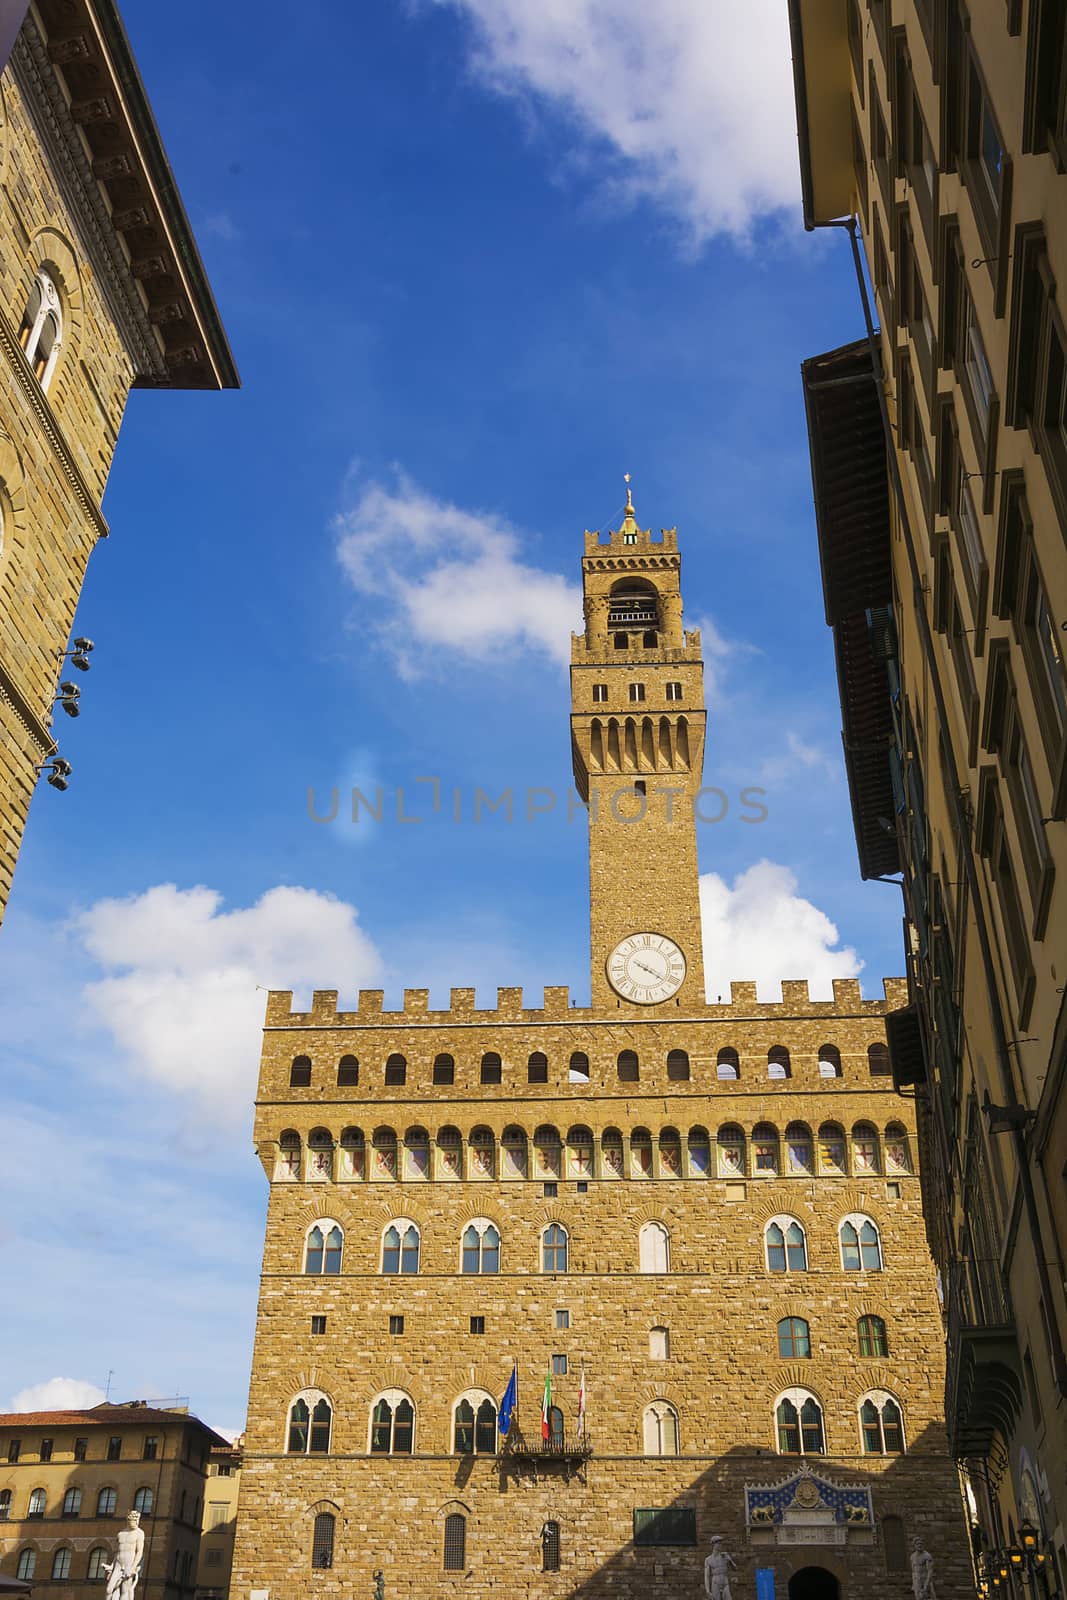 Palazzo Vecchio in Florence by rarrarorro